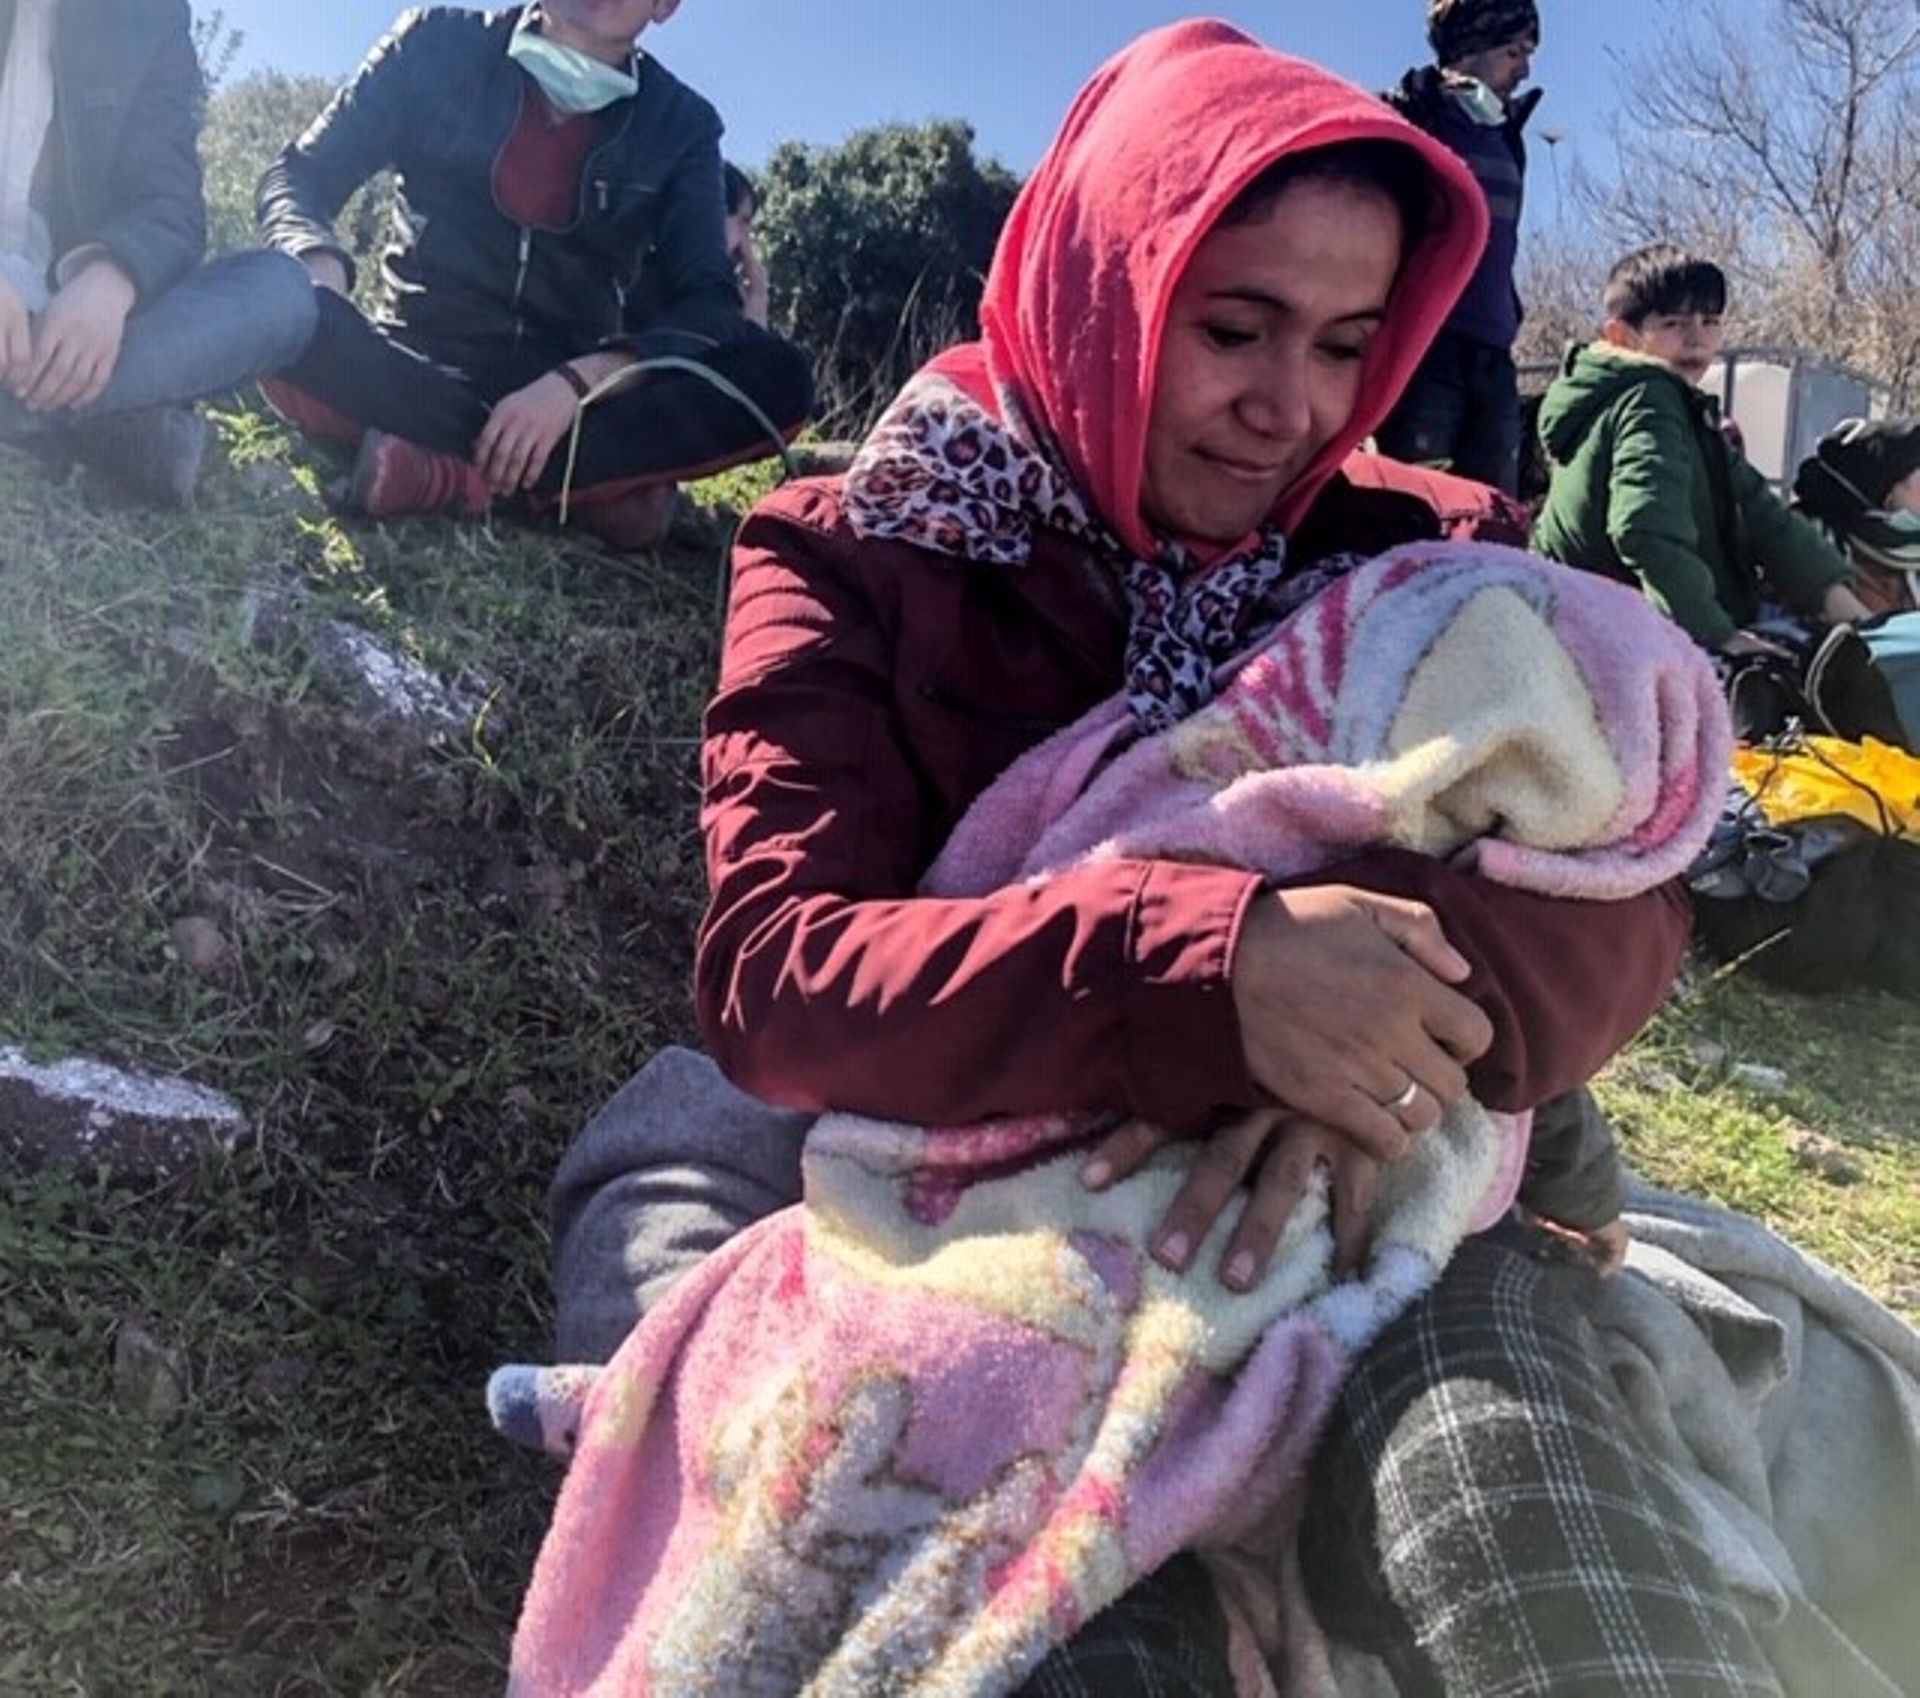 Ces migrants afghans sont arrivés de Turquie par la mer. Après avoir passés deux jours sur la plage, les autorités ne savent pas où les emmener. 